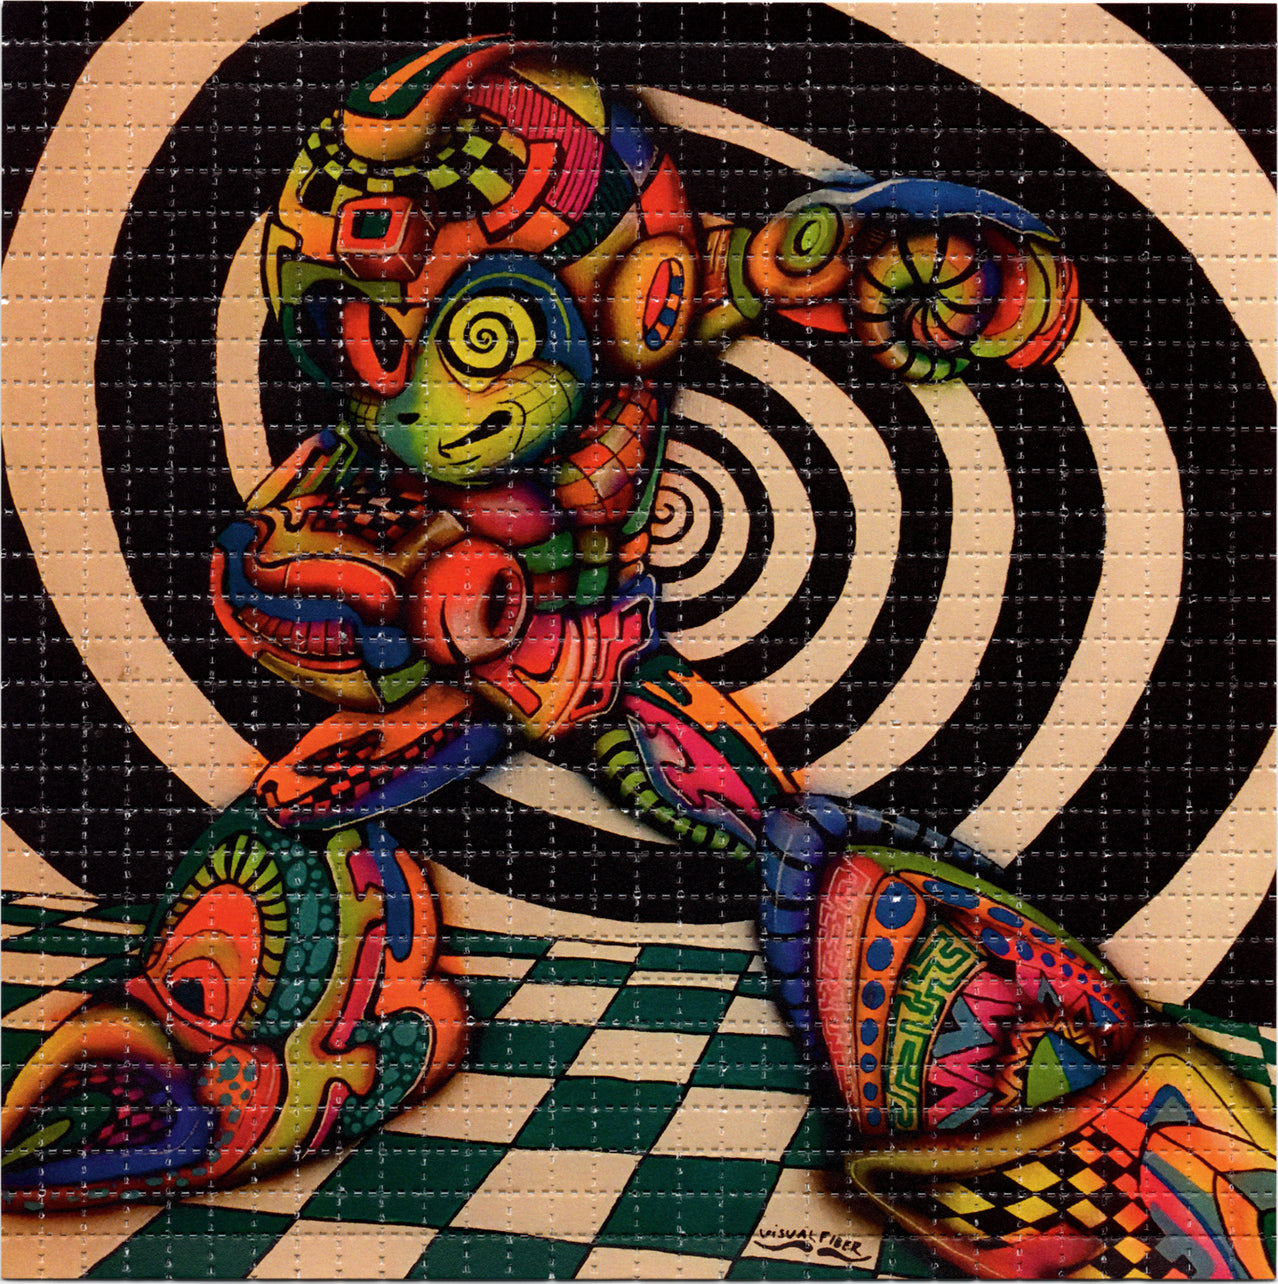 Mega Man by Visual Fiber Limited Edition LSD blotter art print